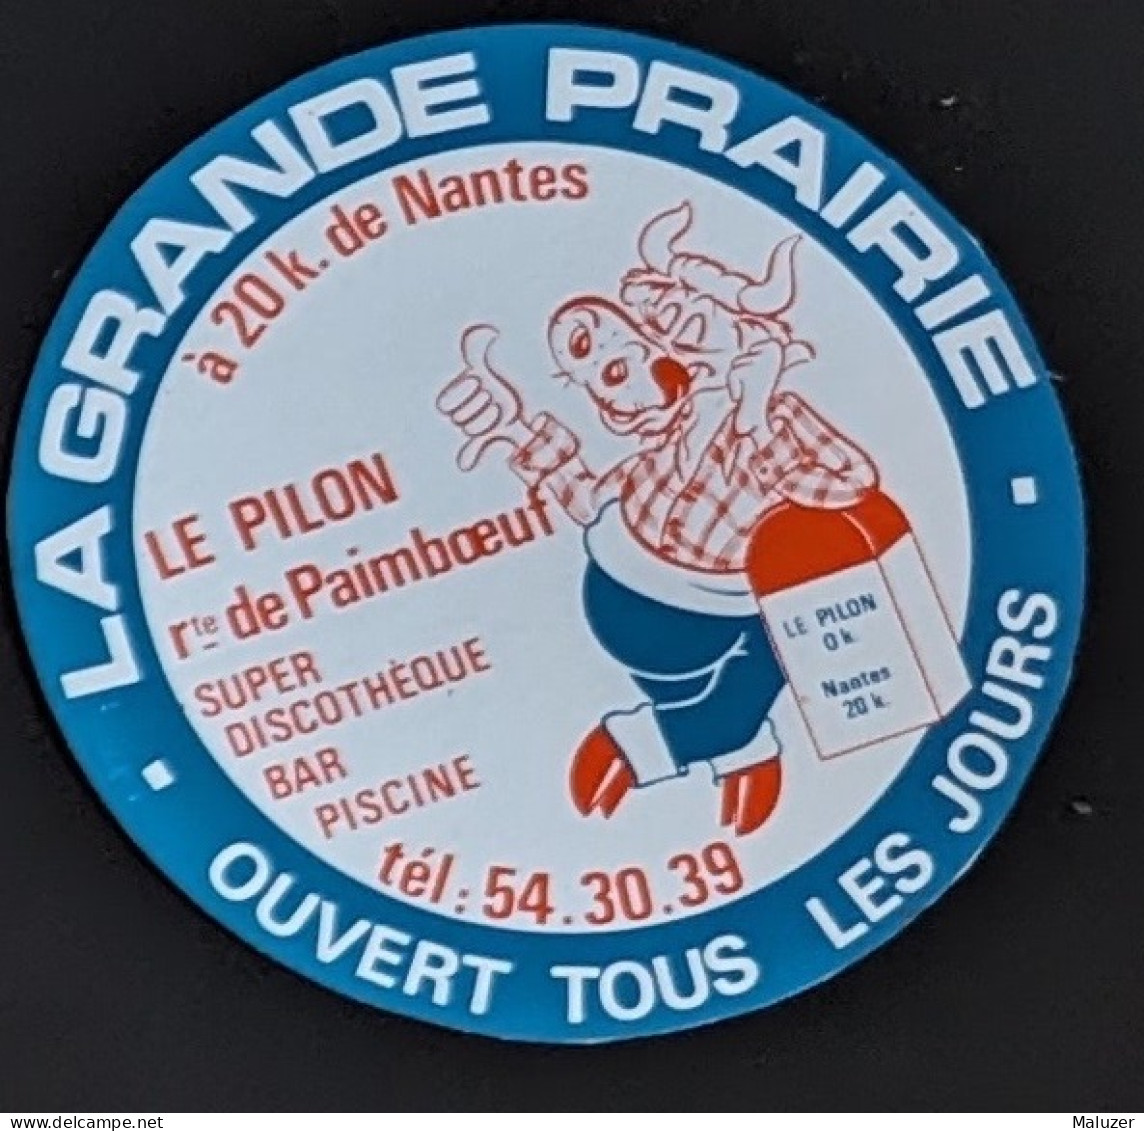 AUTOCOLLANT LA GRANDE PRAIRIE - DISCOTHEQUE BAR PISCINE - LE PILON - CHEIX EN RETZ - 44 LOIRE ATLANTIQUE - DANCING - Stickers